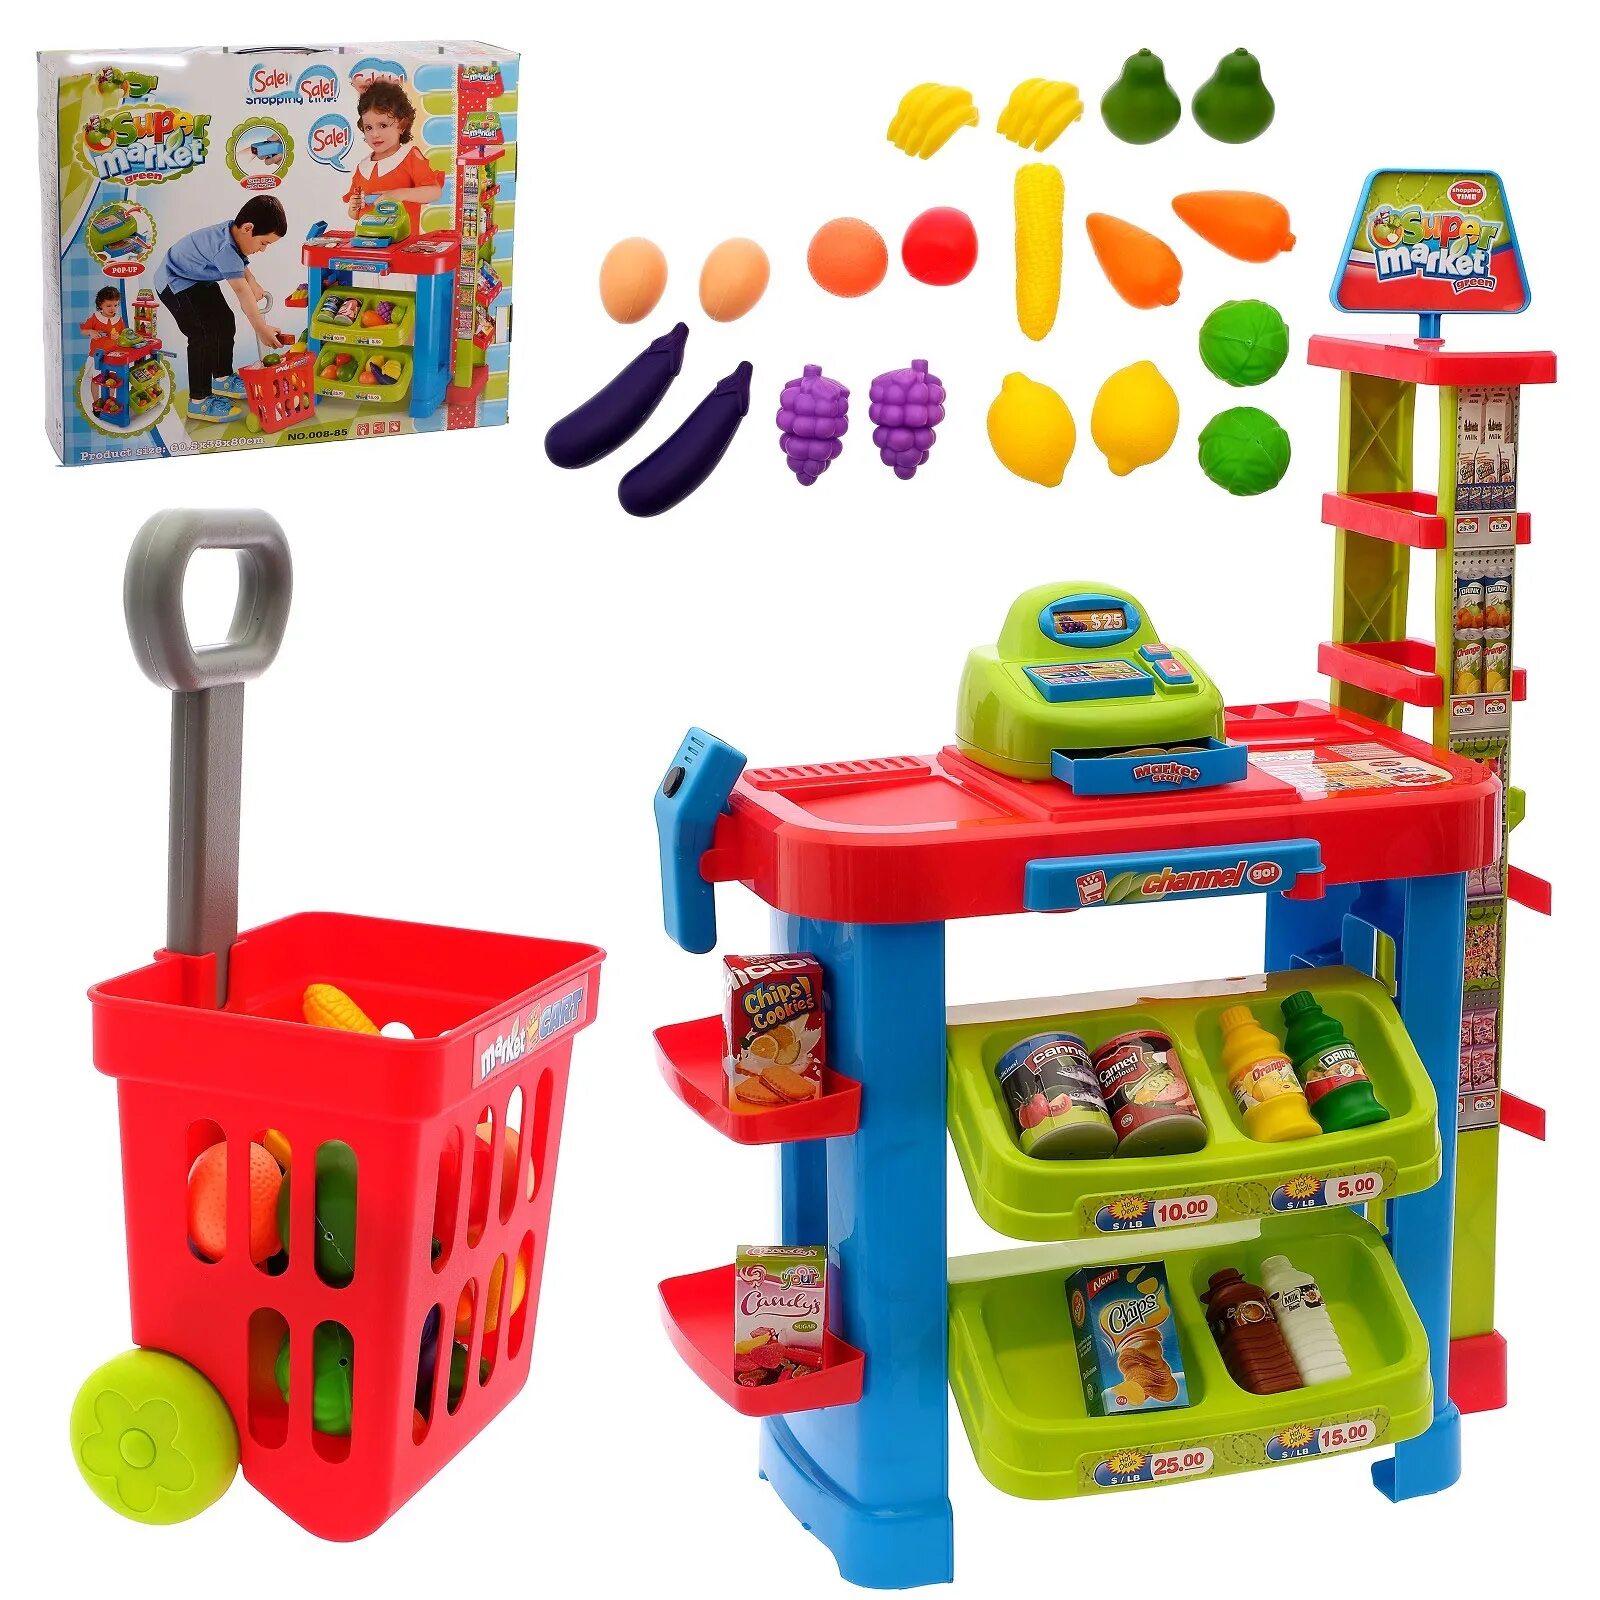 Игрушки для детского сада. Игровой набор магазин. Набор игрушек для детей. Игровые наборы для детей.